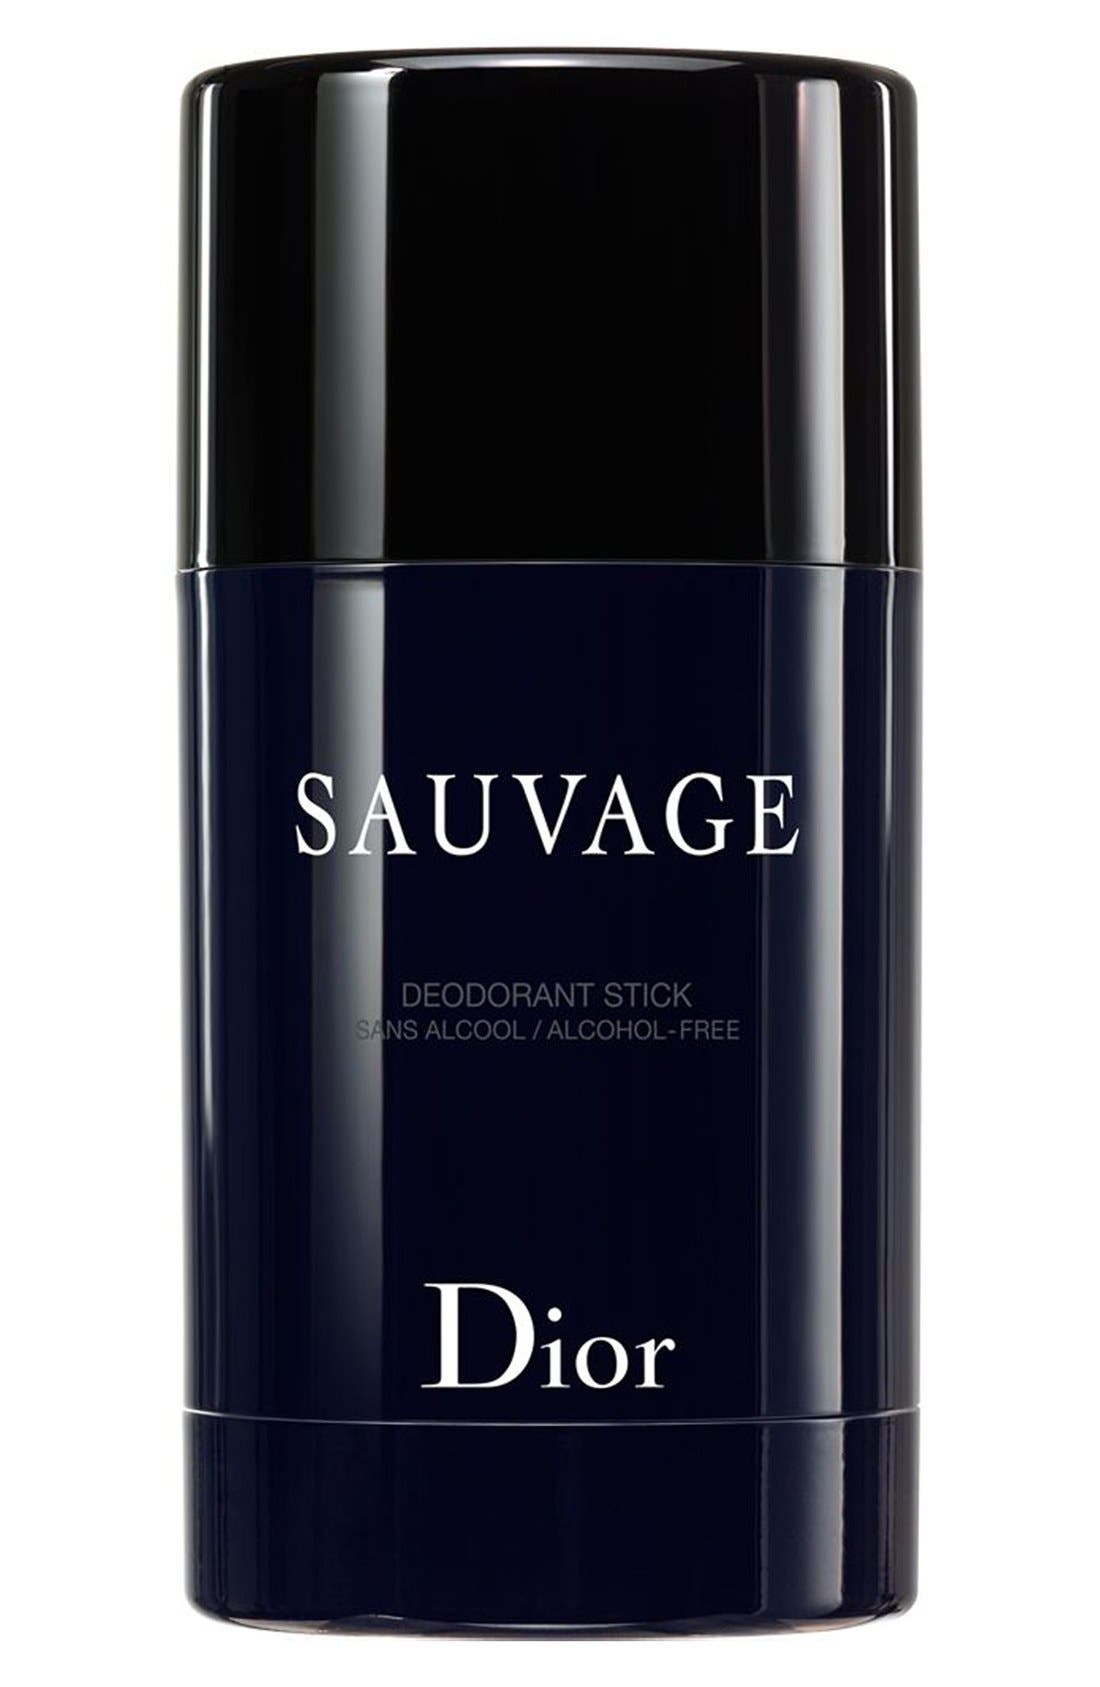 dior sauvage deodorant stick review